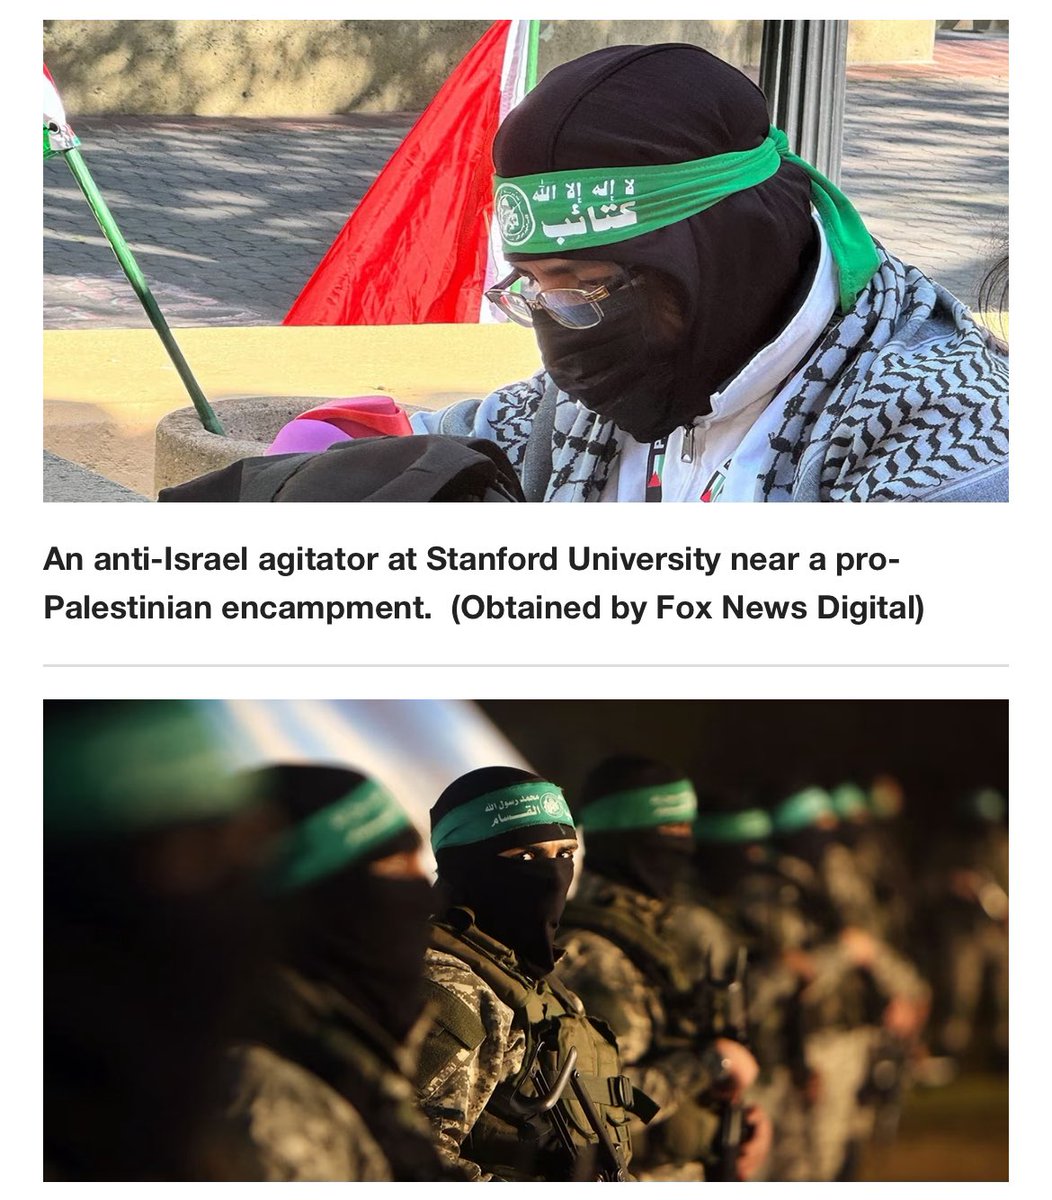 یک تروریست حماس در بین دانشجویان معترض در دانشگاه استفورد کالیفرنیا. امریکا و اروپا تاوان خیانت به #شاه را به زودی پس خواهند داد. 
@HamasTerrorist